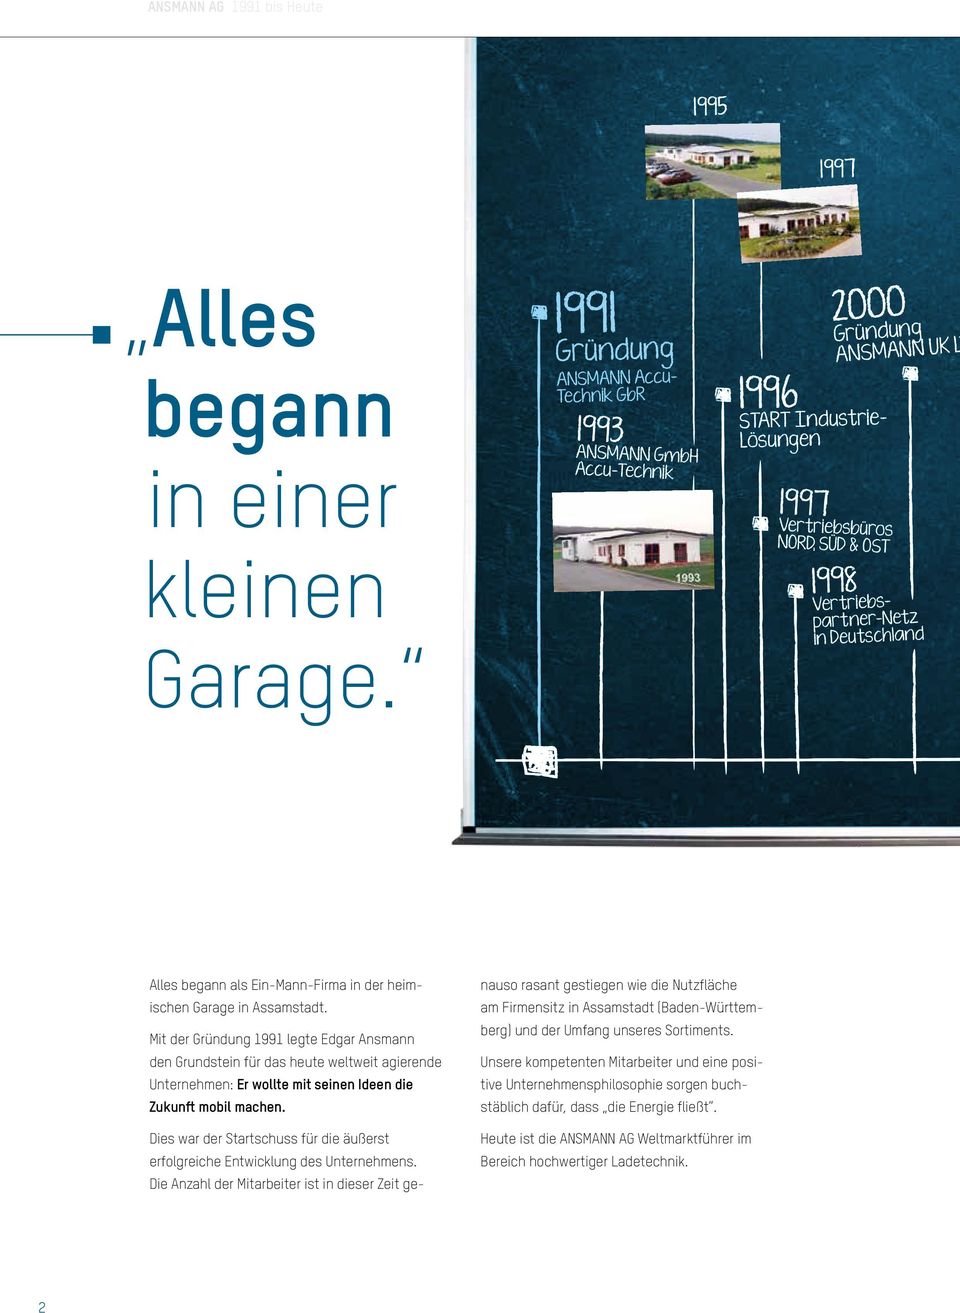 Deutschland Alles begann als Ein-Mann-Firma in der heimischen Garage in Assamstadt.